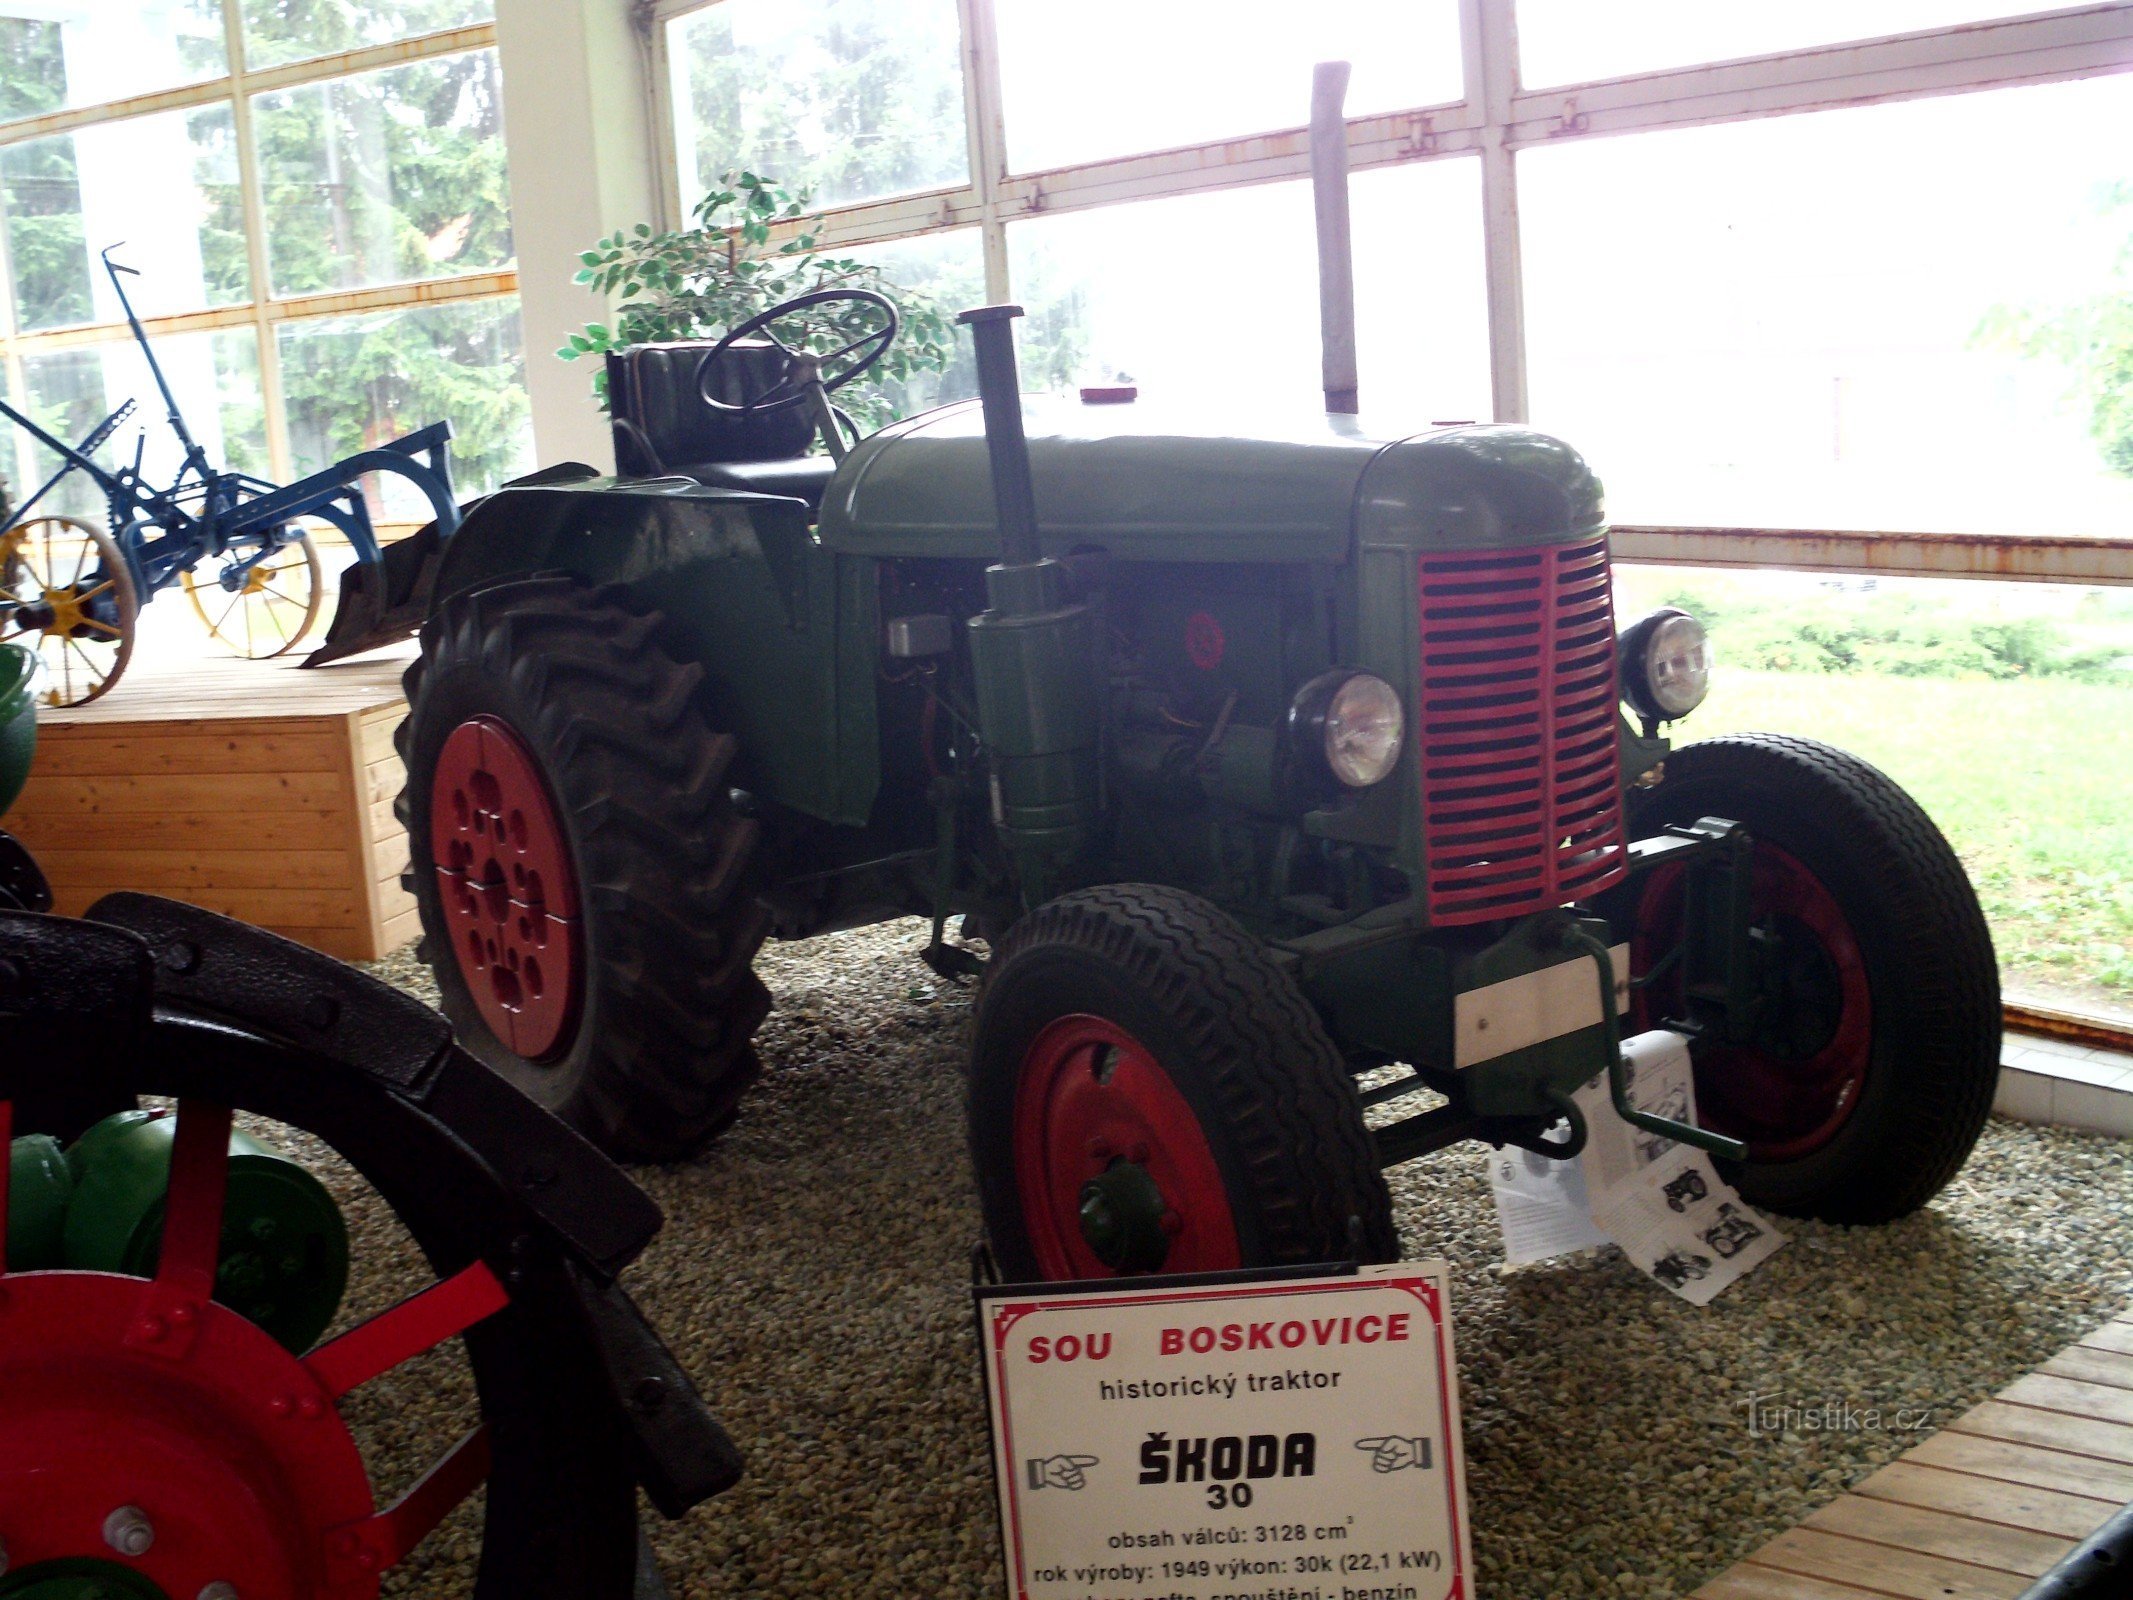 Škoda 30 -traktori oli tärkeä toisen maailmansodan jälkeisen maatalouden kollektivisoinnin aikana. maailmansota.